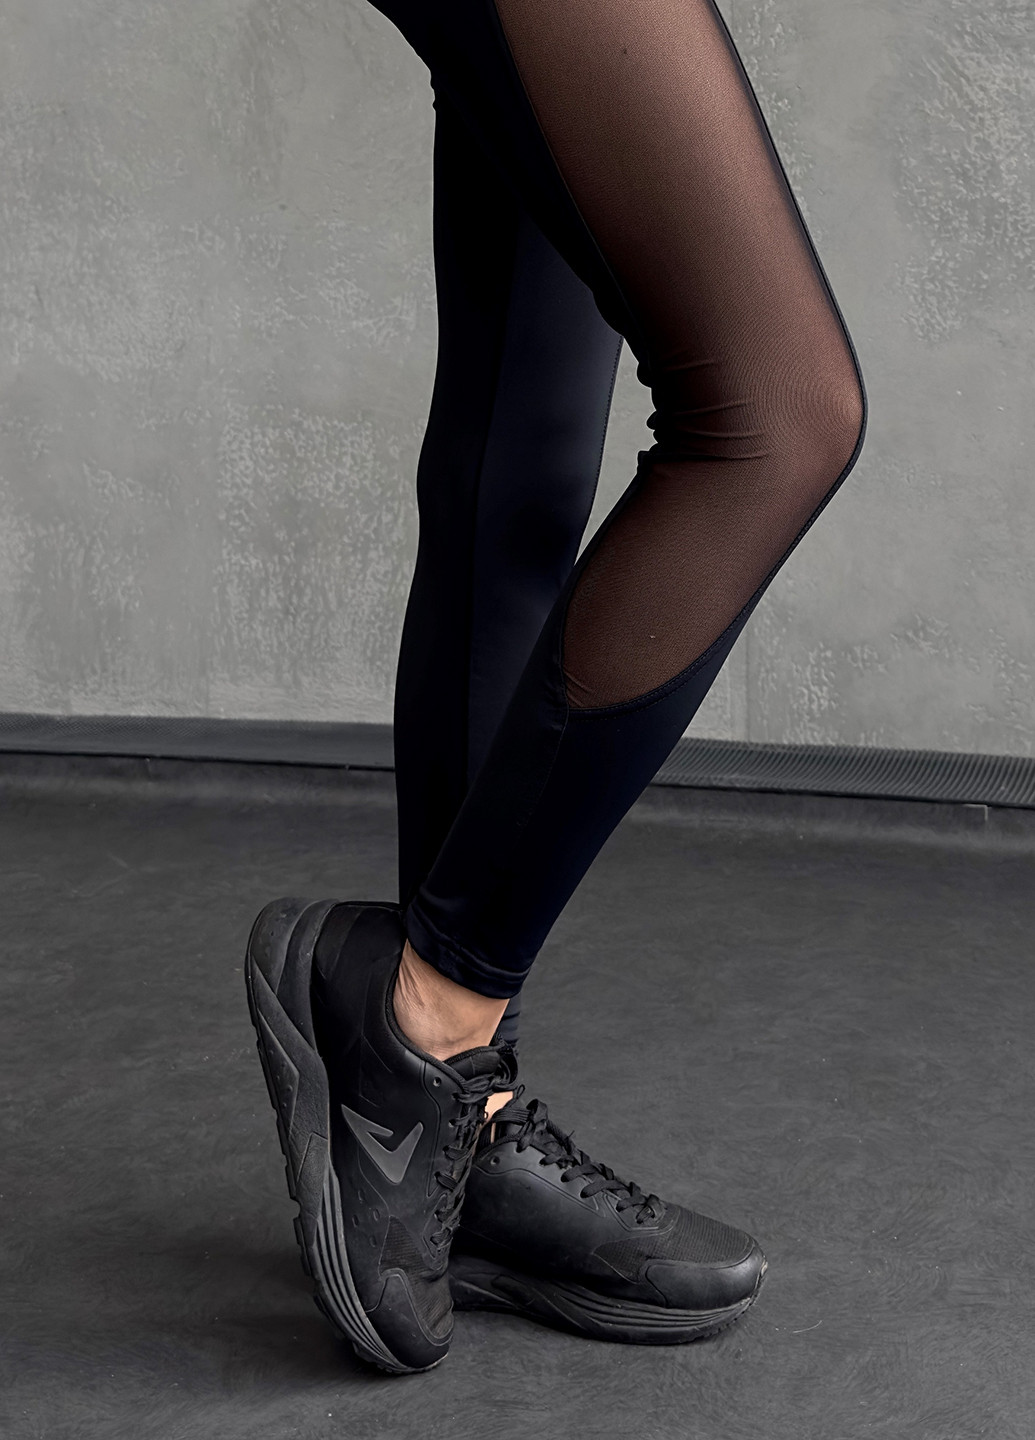 Комбинезон NOVA VEGA комбинезон-брюки однотонный чёрный спортивный бифлекс, полиэстер